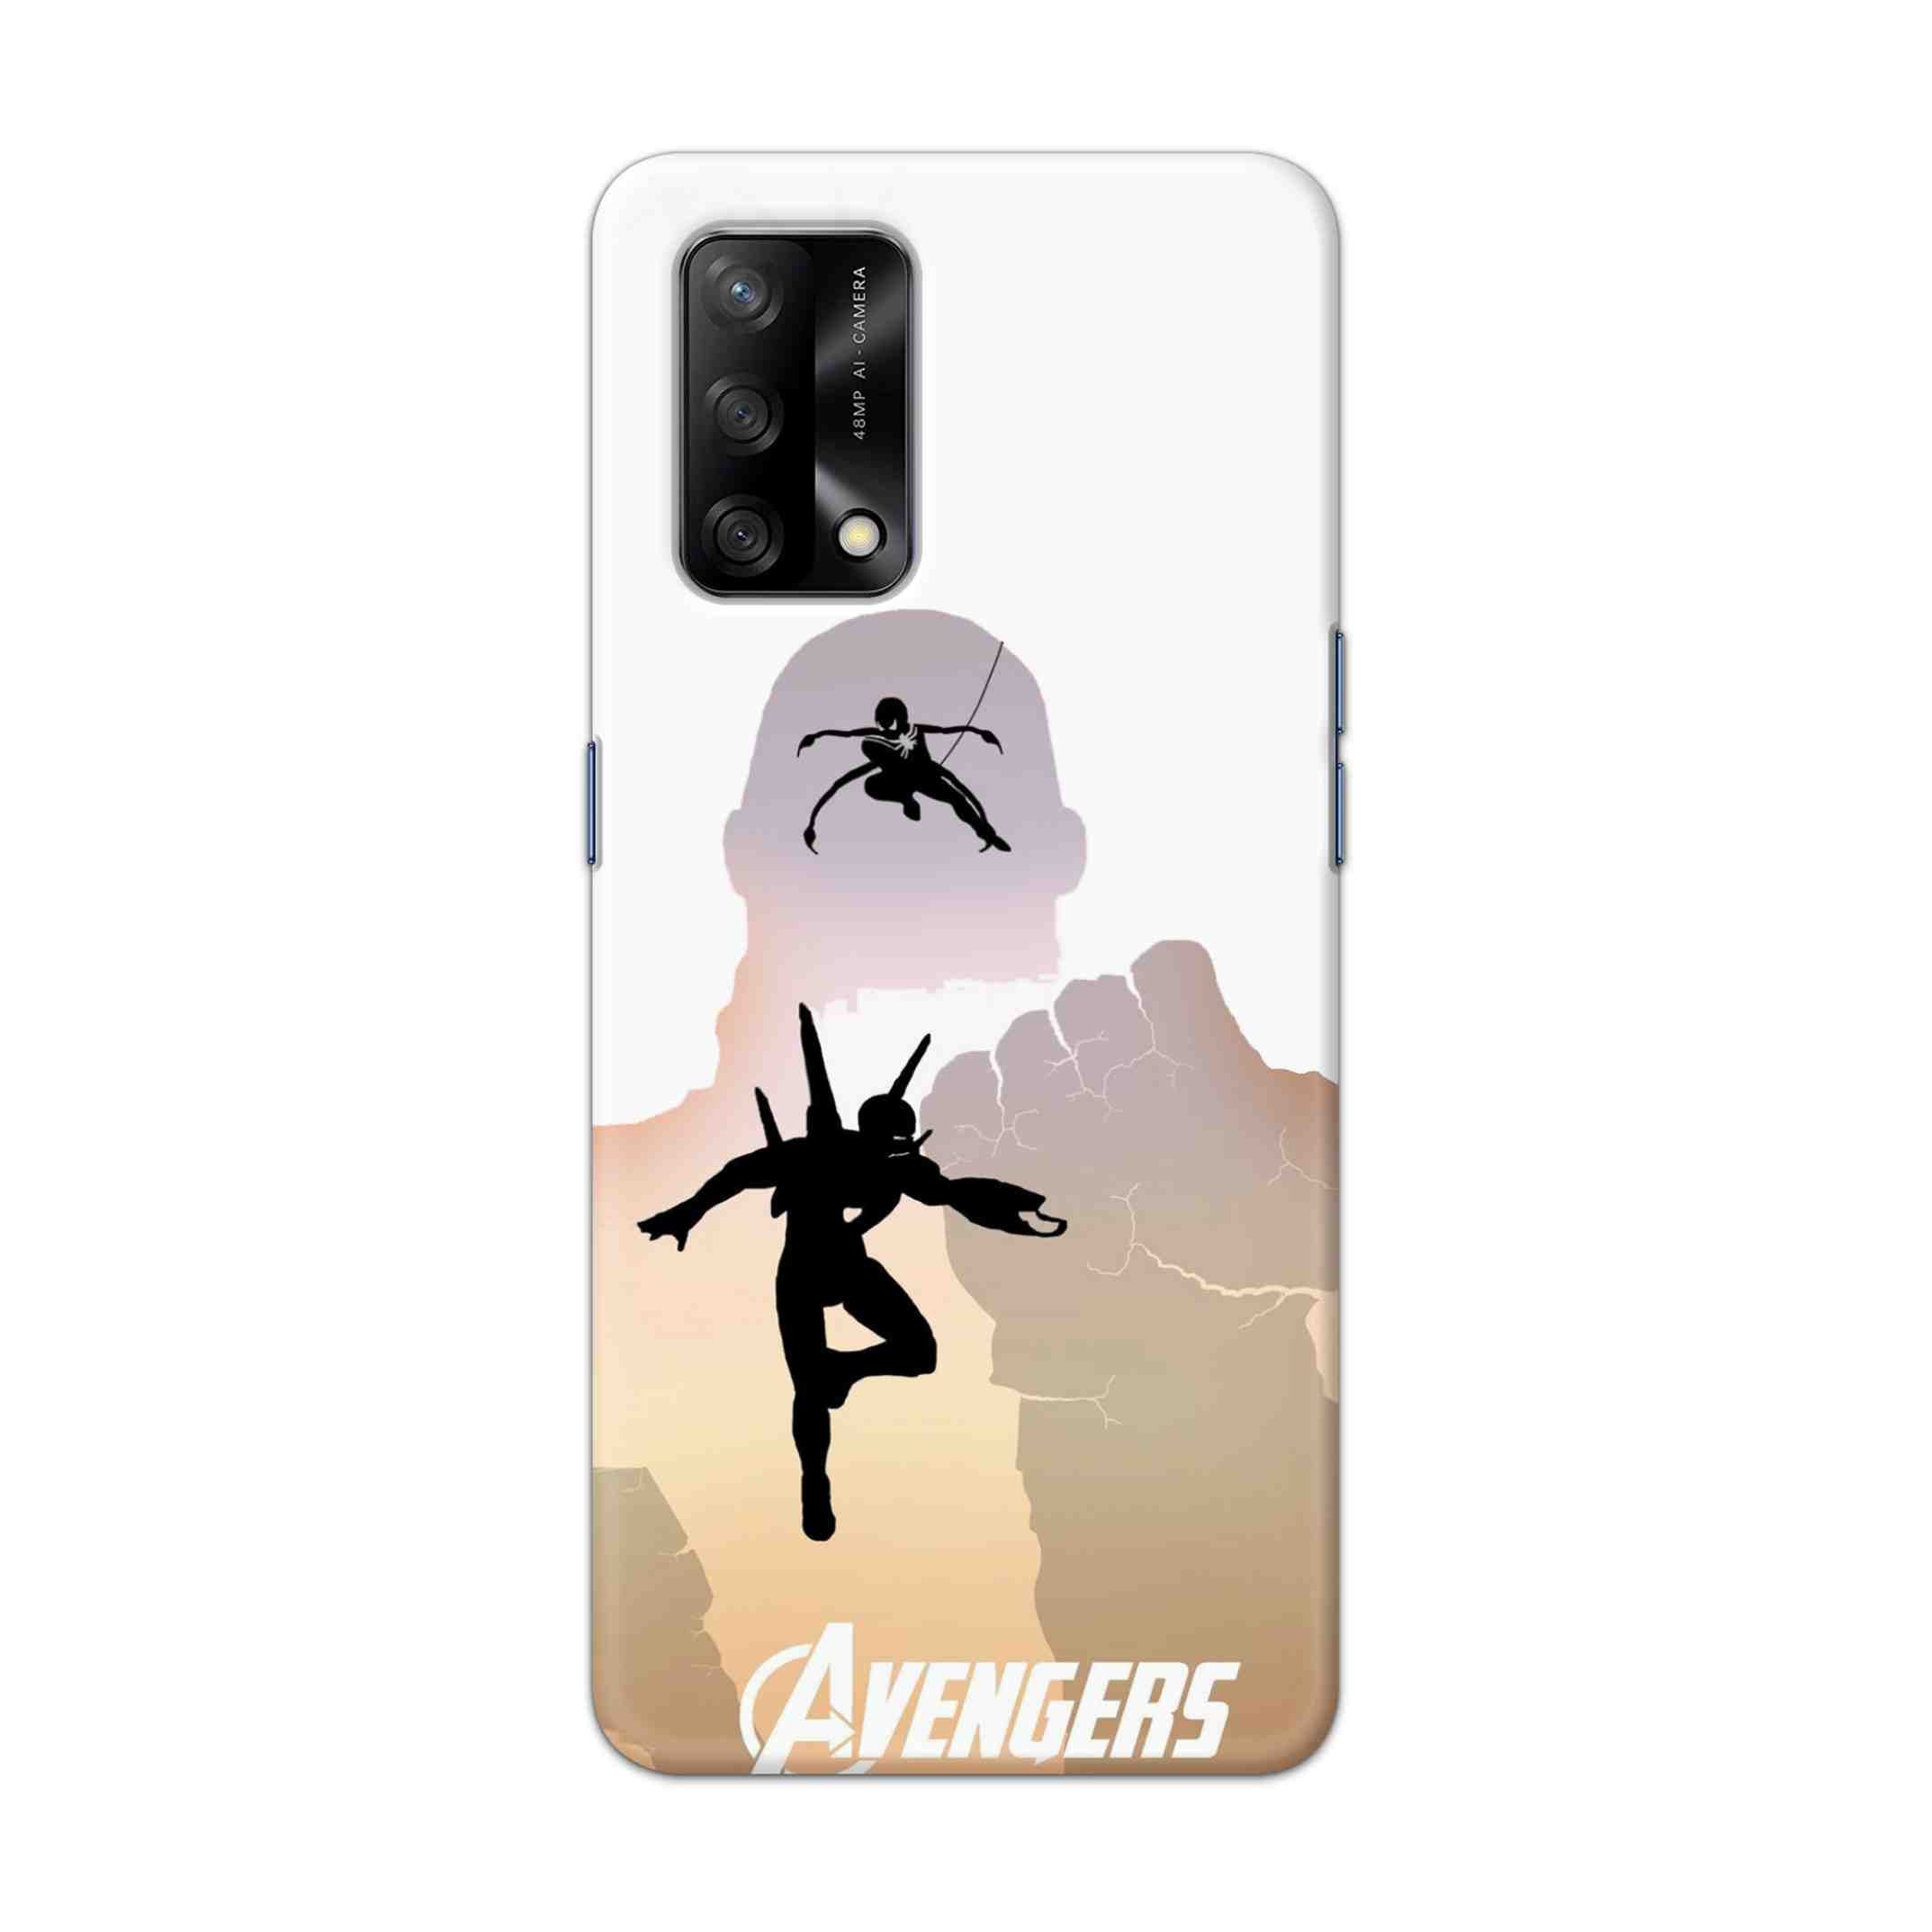 Buy Iron Man Vs Spiderman Hard Back Mobile Phone Case Cover For Oppo F19 Online